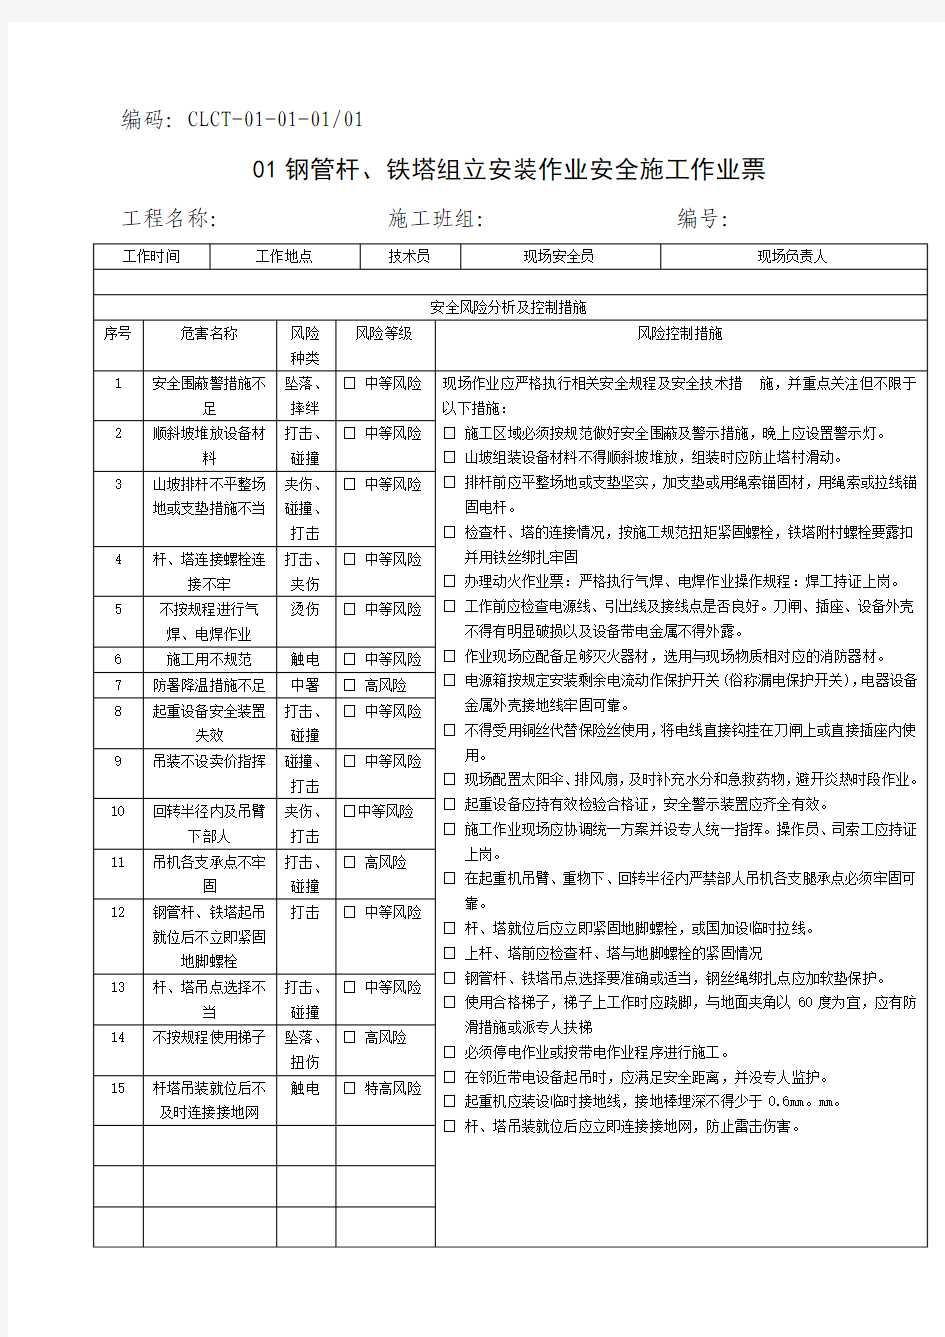 中国南方电网有限责任公司电网建设安全施工作业票(配网部分)